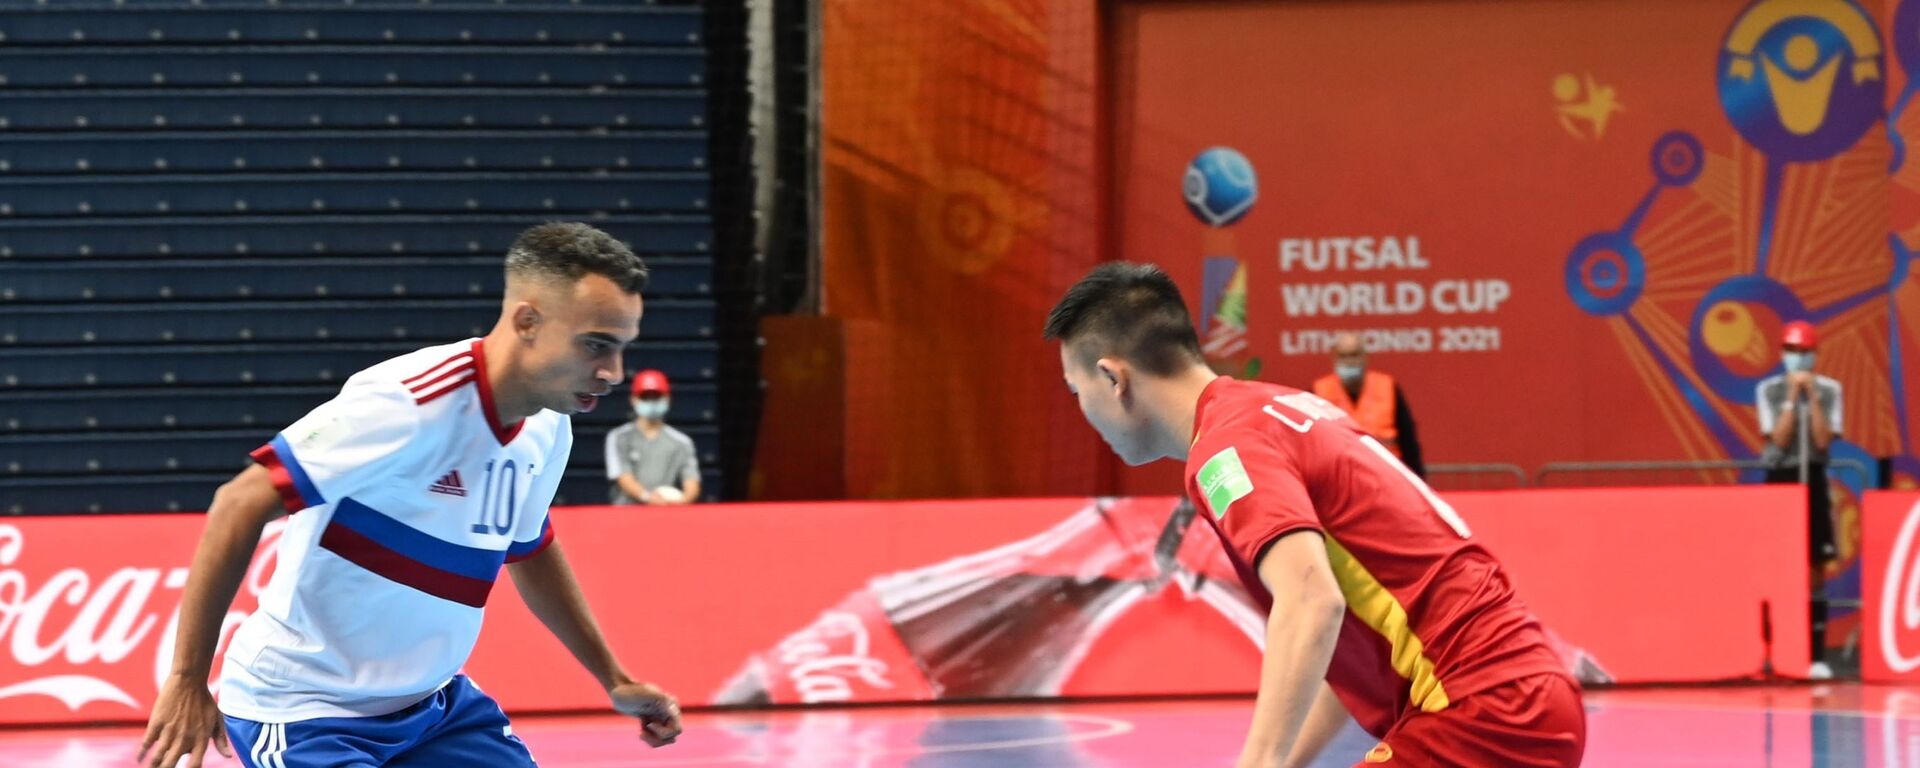 VCK Futsal World Cup 2021: Thua sát nút Á quân thế giới, tuyển Việt Nam chia tay World Cup futsal 2021 - Sputnik Việt Nam, 1920, 23.09.2021